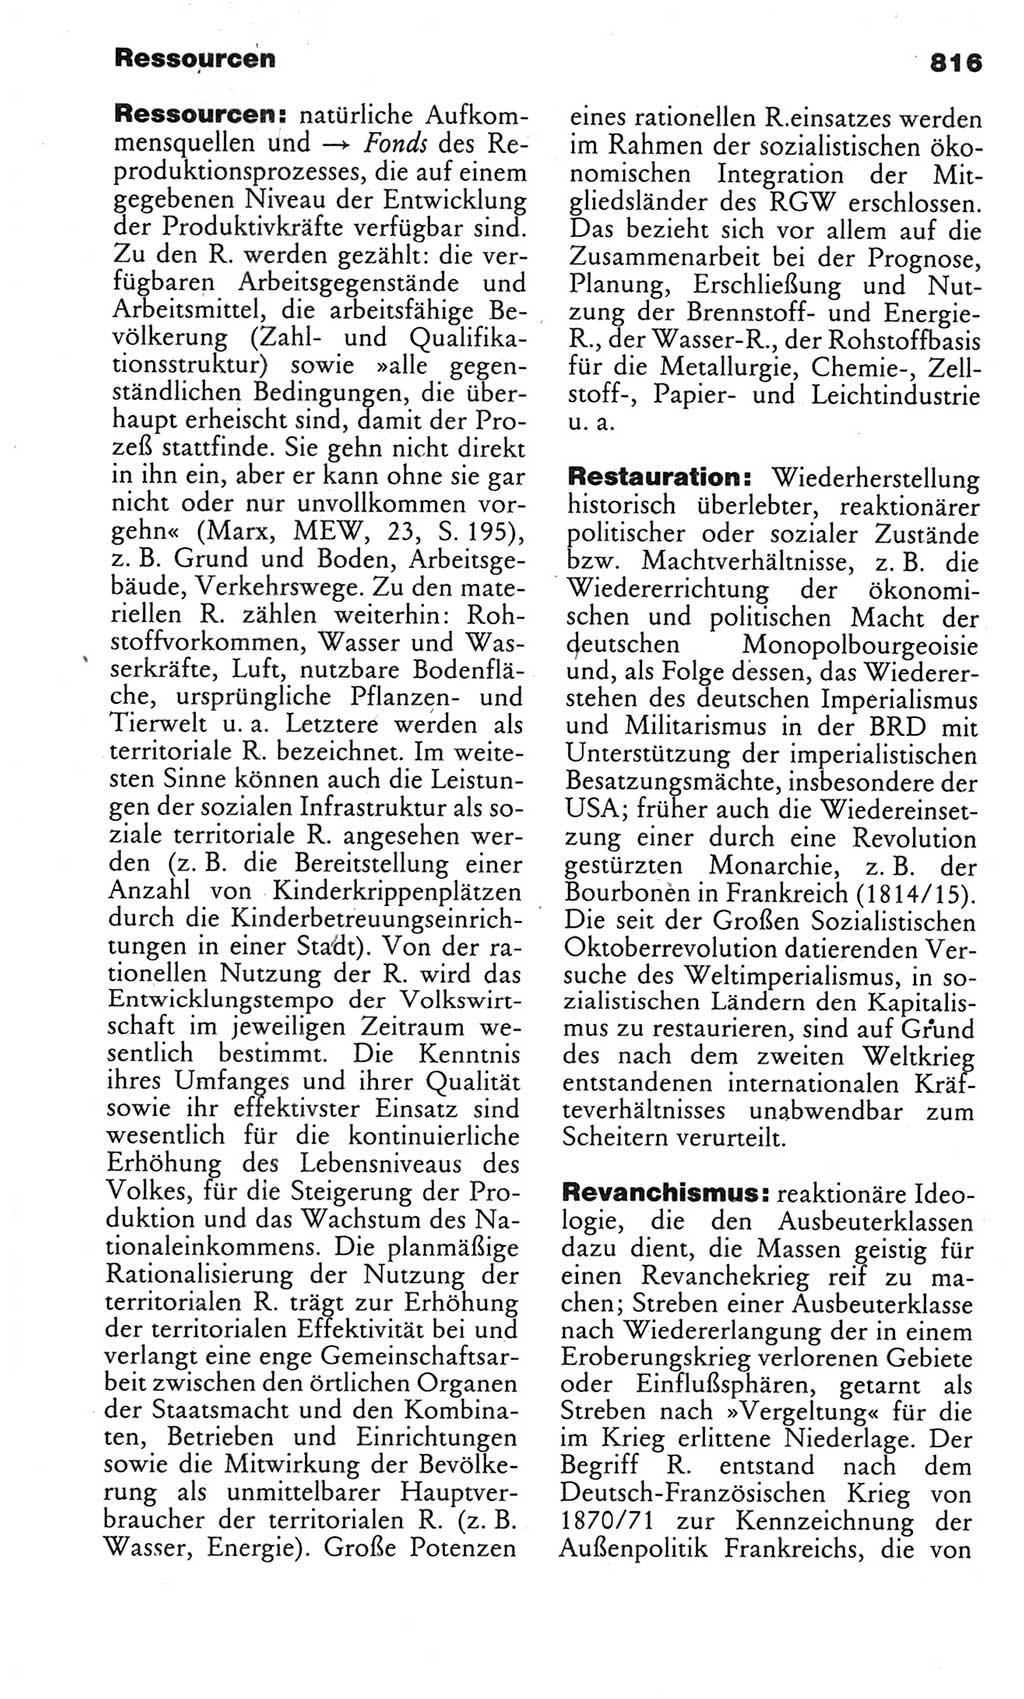 Kleines politisches Wörterbuch [Deutsche Demokratische Republik (DDR)] 1983, Seite 816 (Kl. pol. Wb. DDR 1983, S. 816)